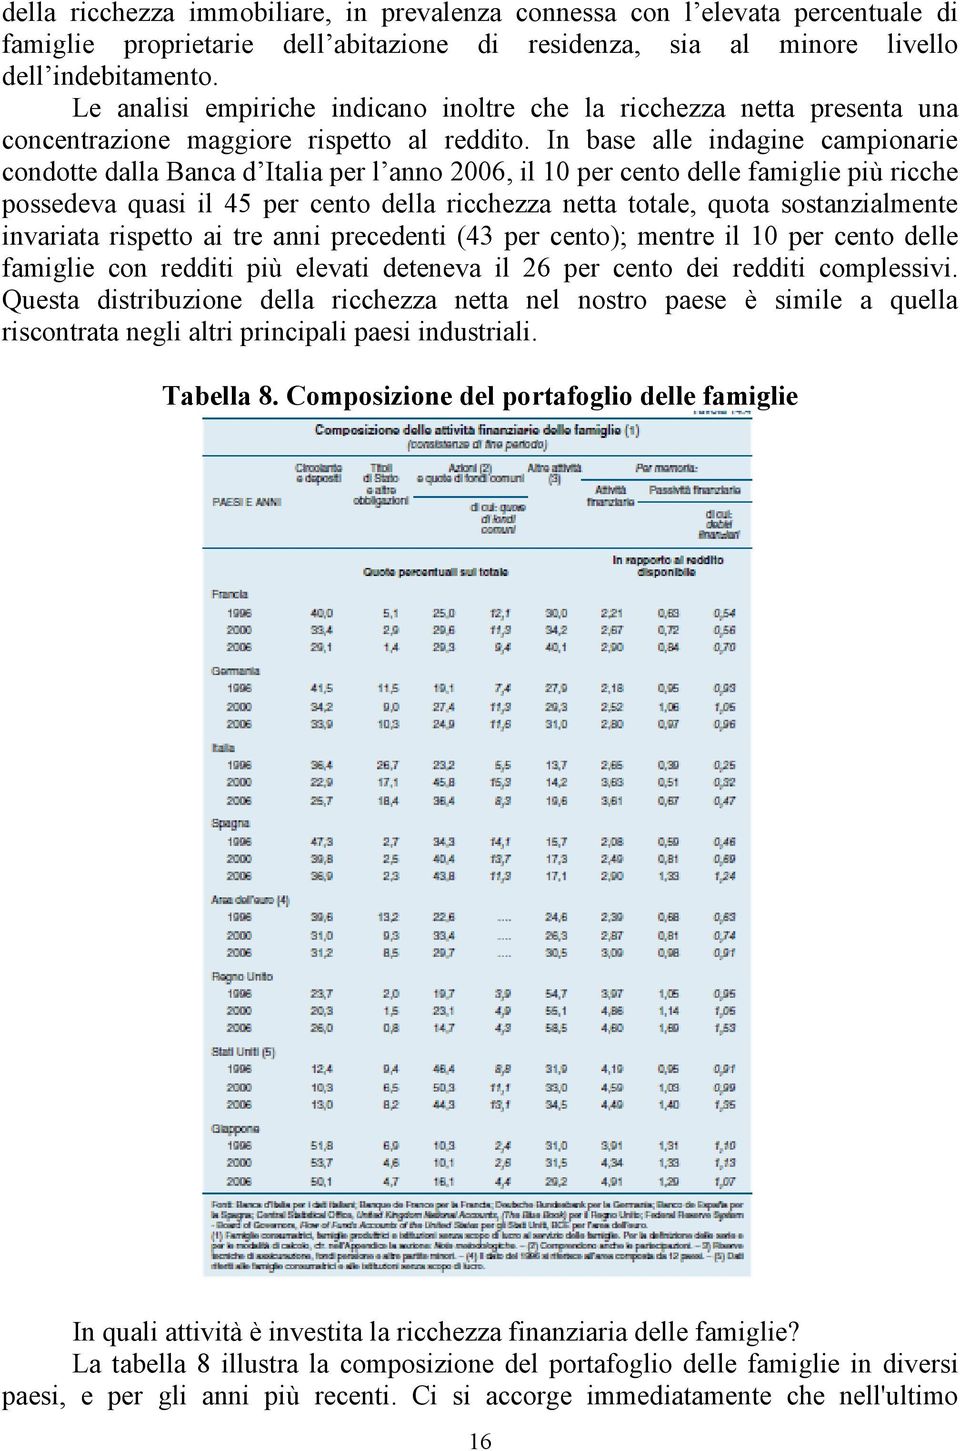 In base alle indagine campionarie condotte dalla Banca d Italia per l anno 2006, il 10 per cento delle famiglie più ricche possedeva quasi il 45 per cento della ricchezza netta totale, quota